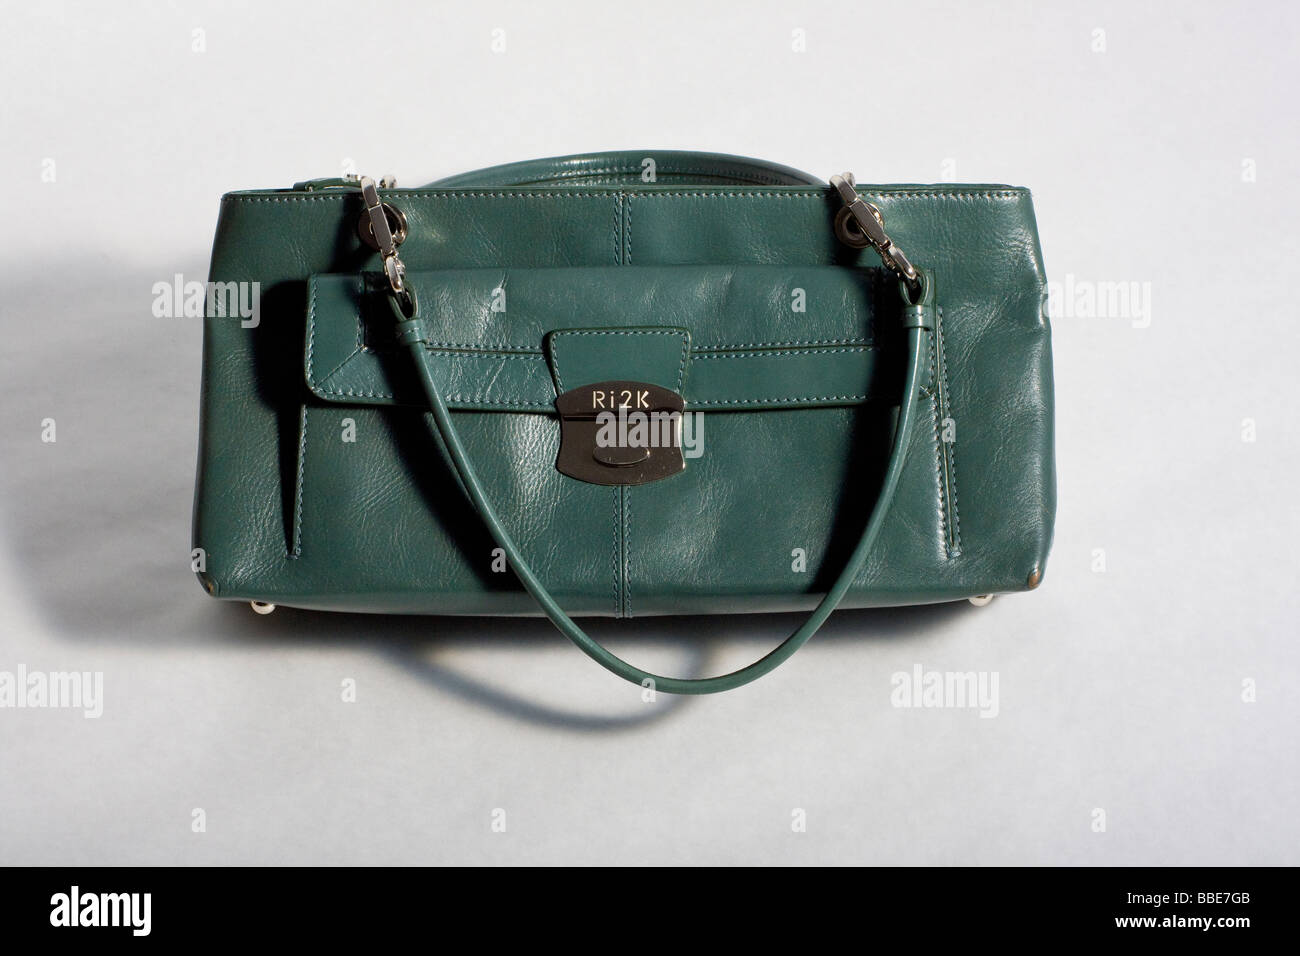 Foto de estudio de elegante bolso verde, con hebilla metálica. Foto de stock